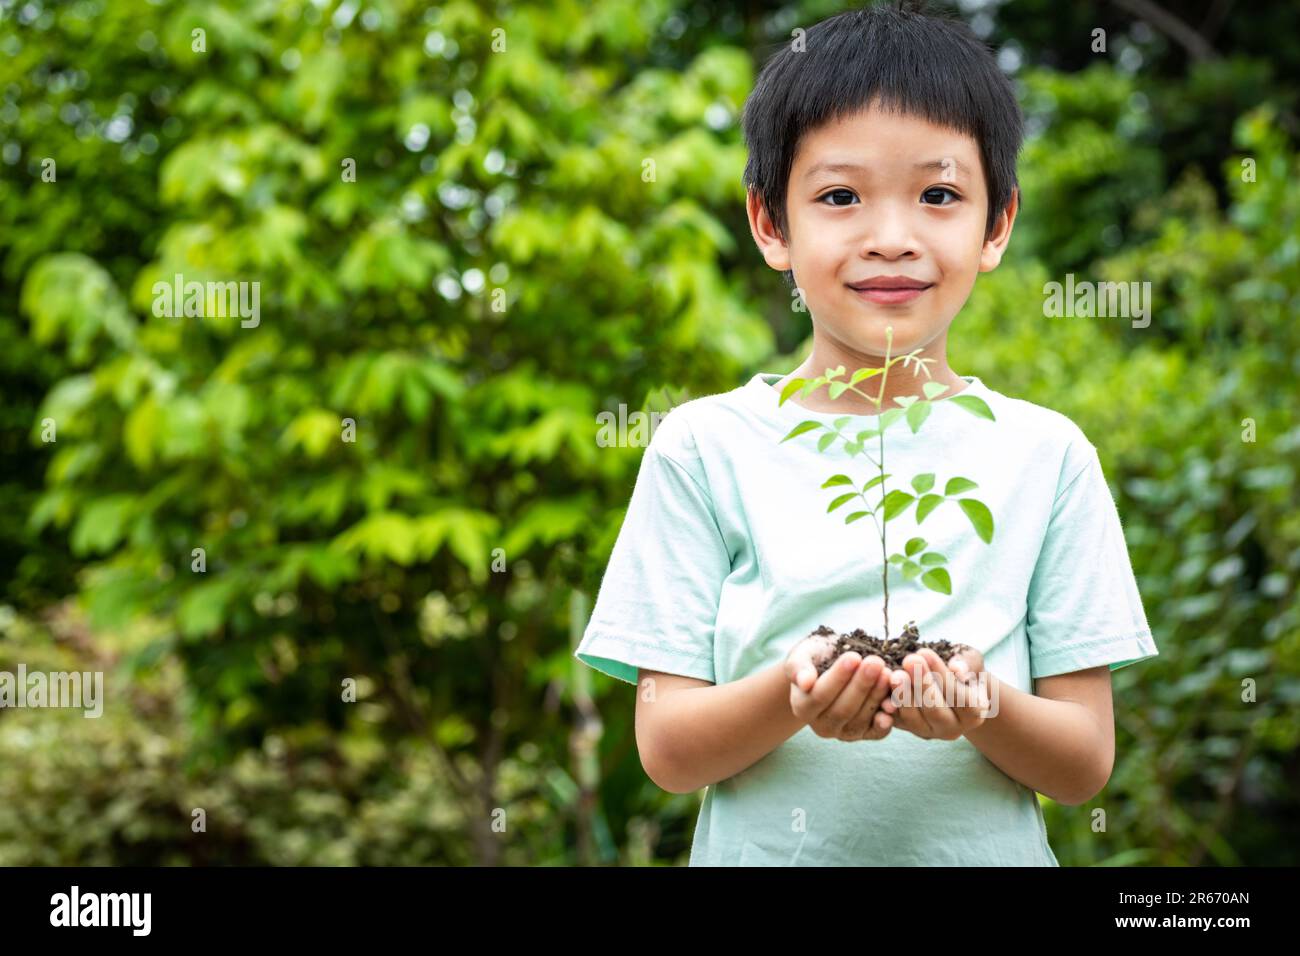 Les mains du petit garçon tiennent un petit arbre. Garçon asiatique tenant une plantule dans sa main. Le garçon est souriant et regardant la caméra. Banque D'Images